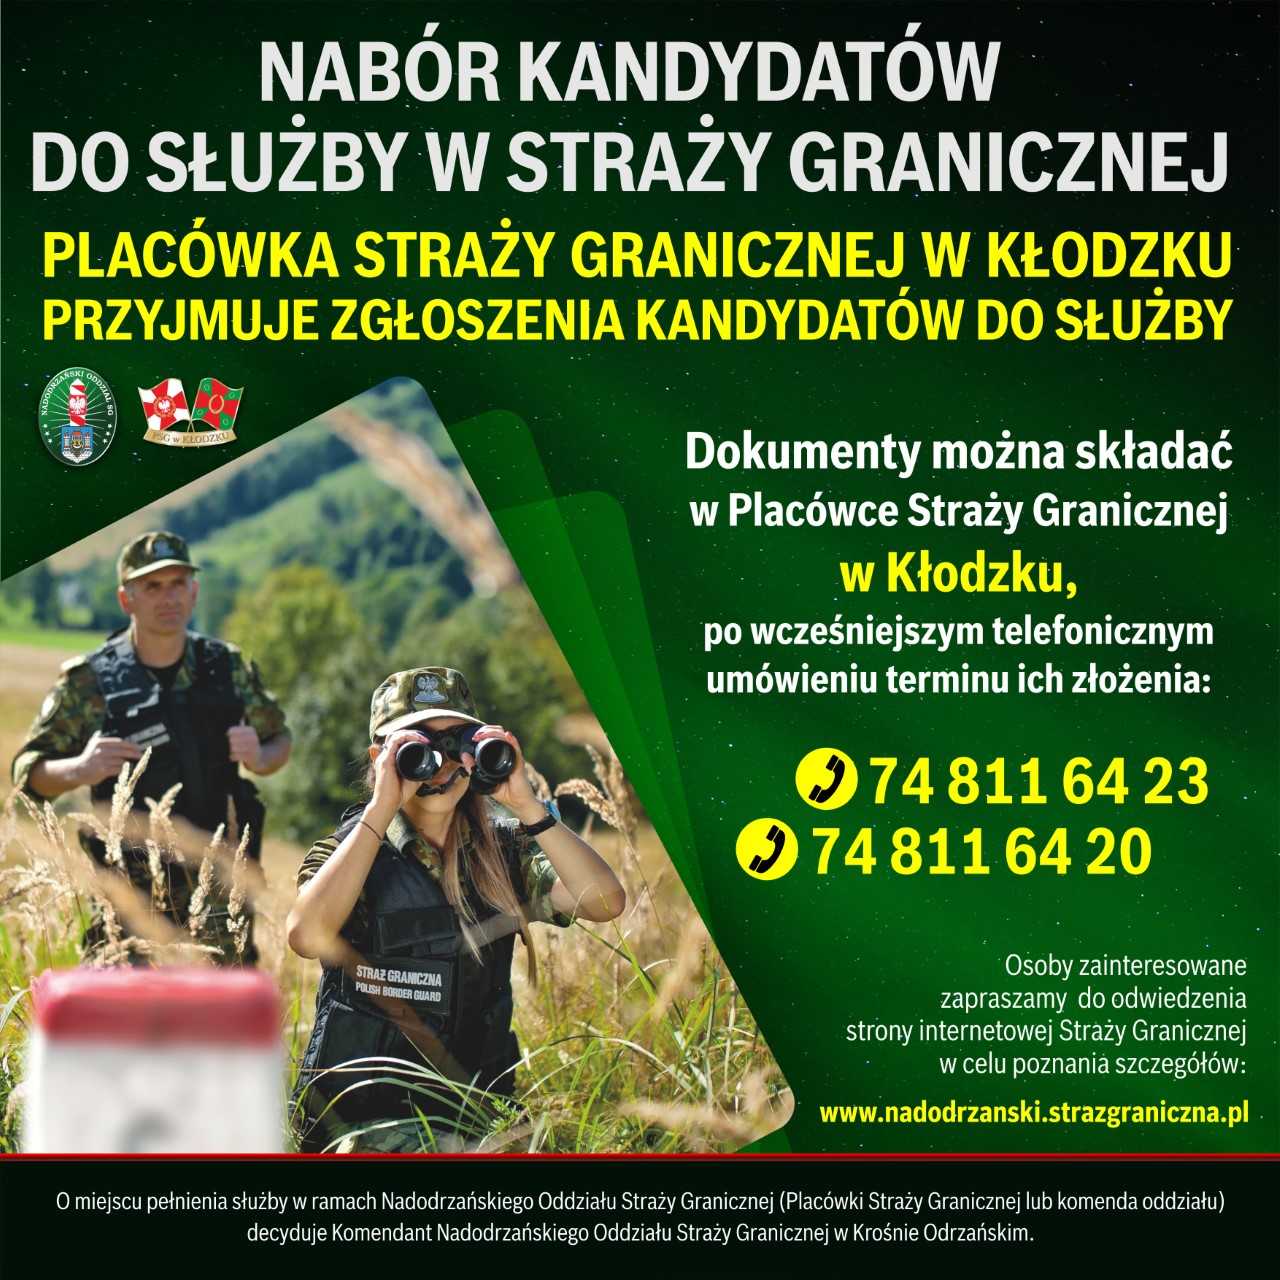 Obrazek dla: Placówka Straży Granicznej w Kłodzku przyjmuje zgłoszenia kandydatów do służby w Straży Granicznej